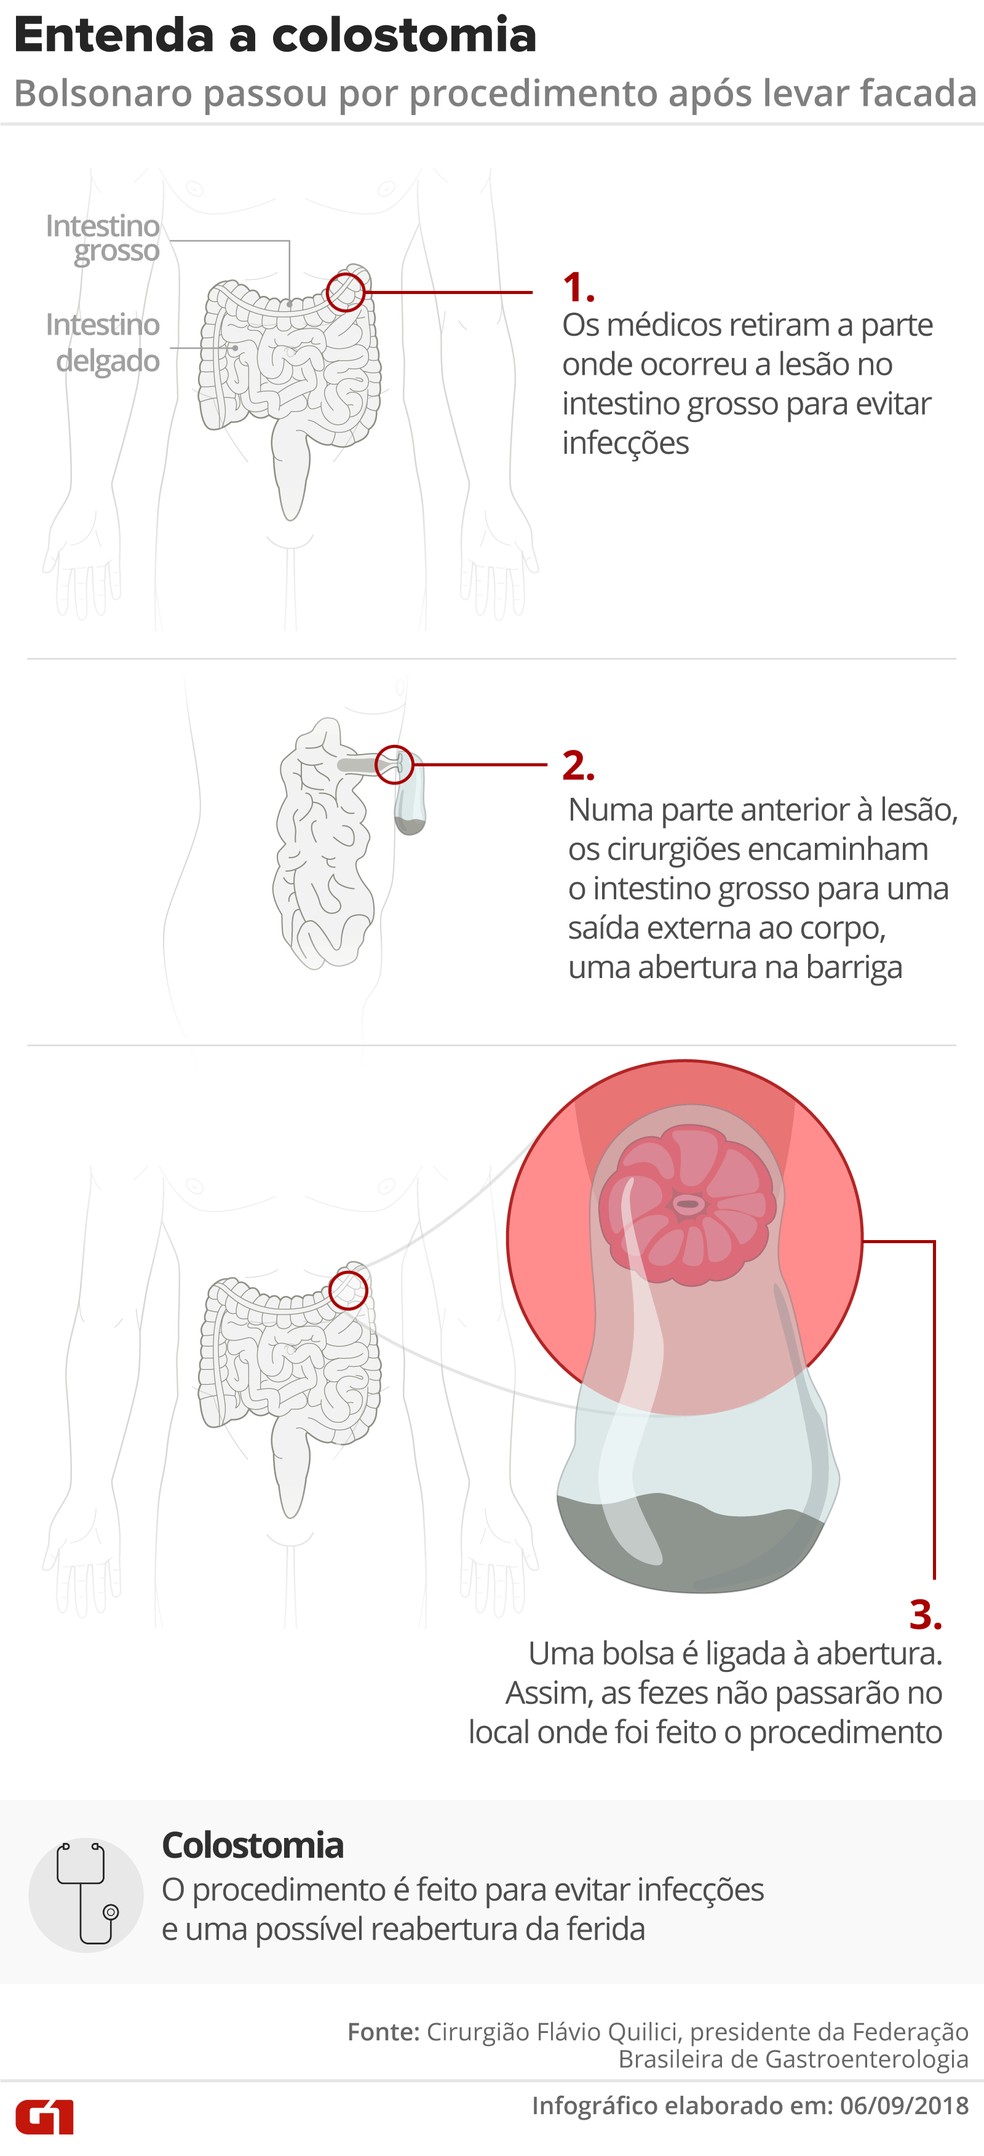 Colostomia: entenda o procedimento que passou Bolsonaro (Foto: Igor Estrella e Alexandre Mauro/G1)